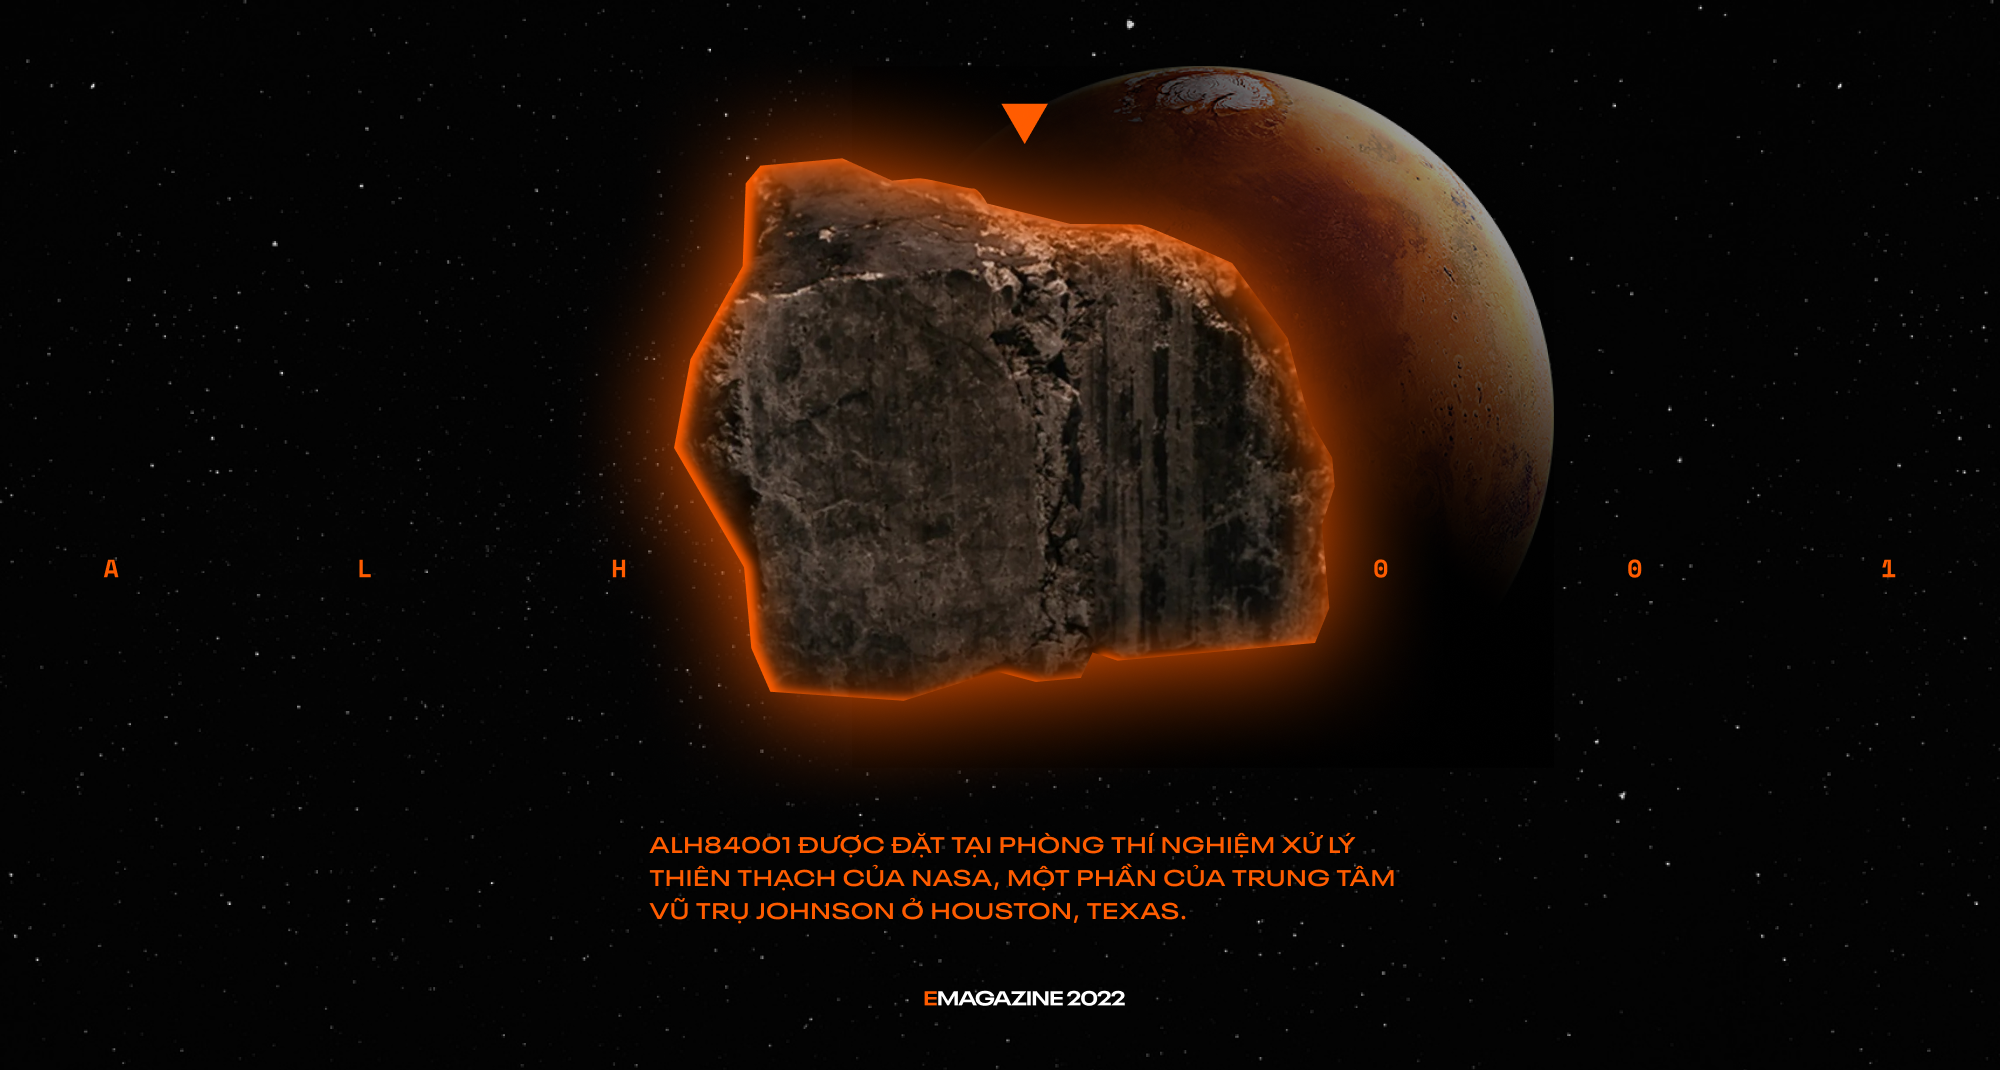 Hòn đá tới từ quá khứ này đã chỉ dẫn hướng đi cho tương lai của cả loài người - Ảnh 6.